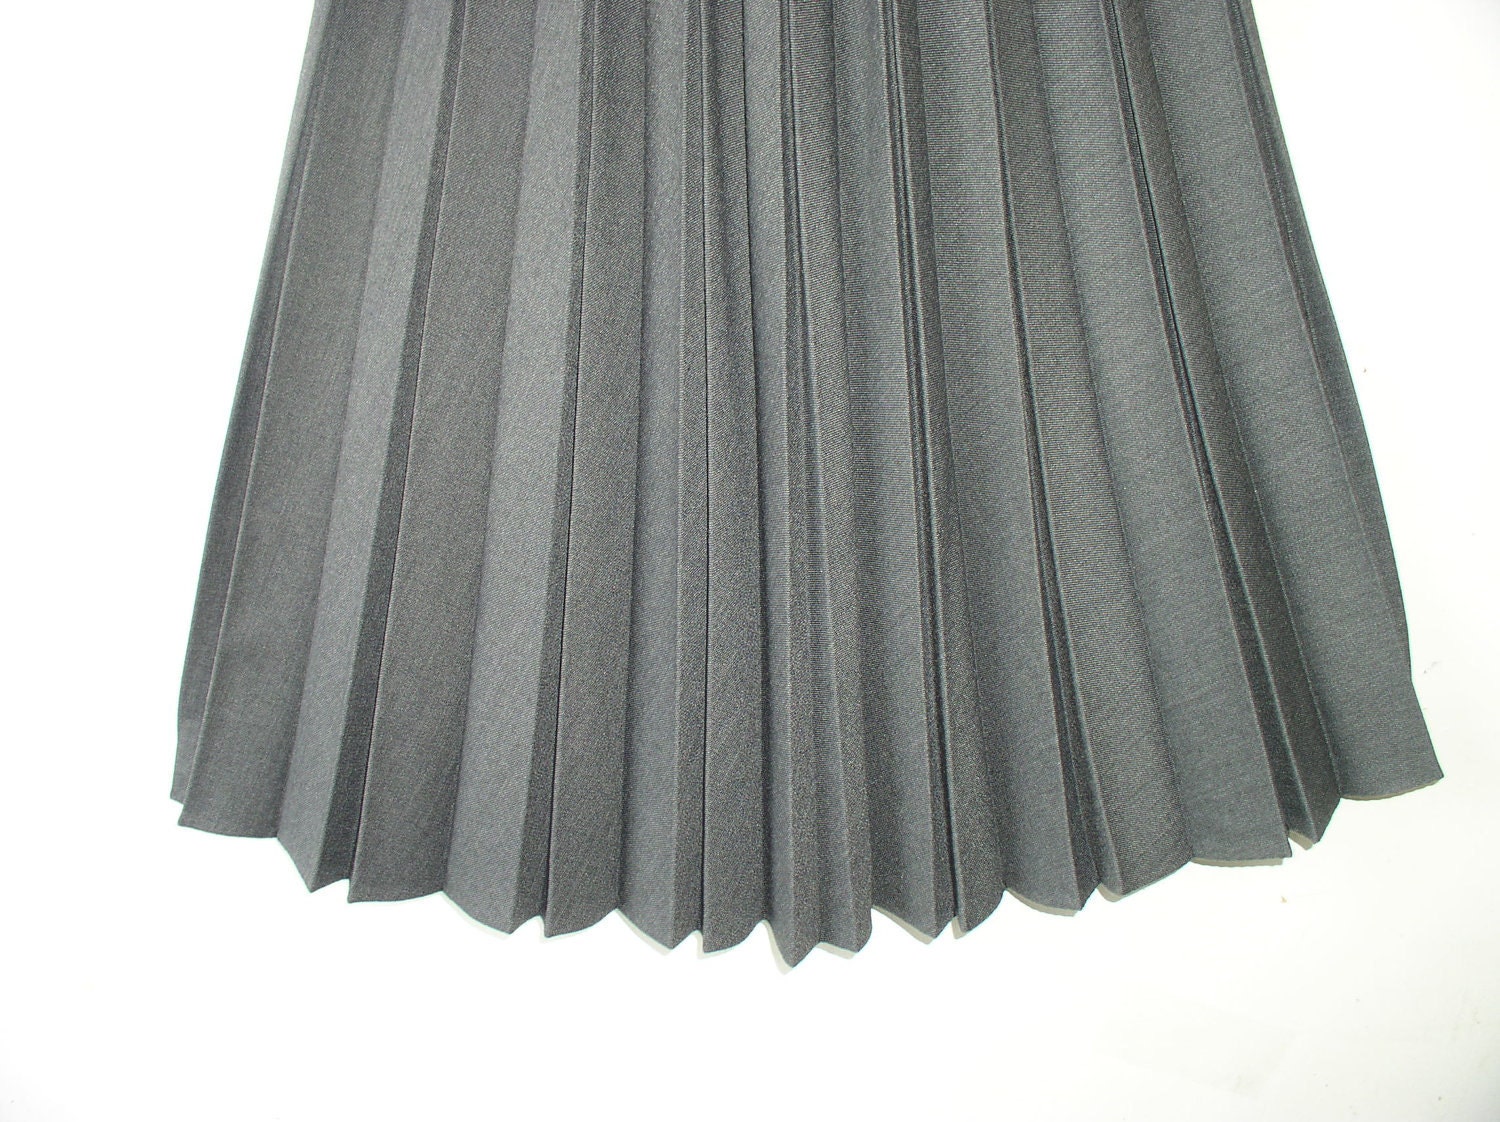 Womens Skirt 1960s Gray Pleated Skirt / Collegian of | Etsy